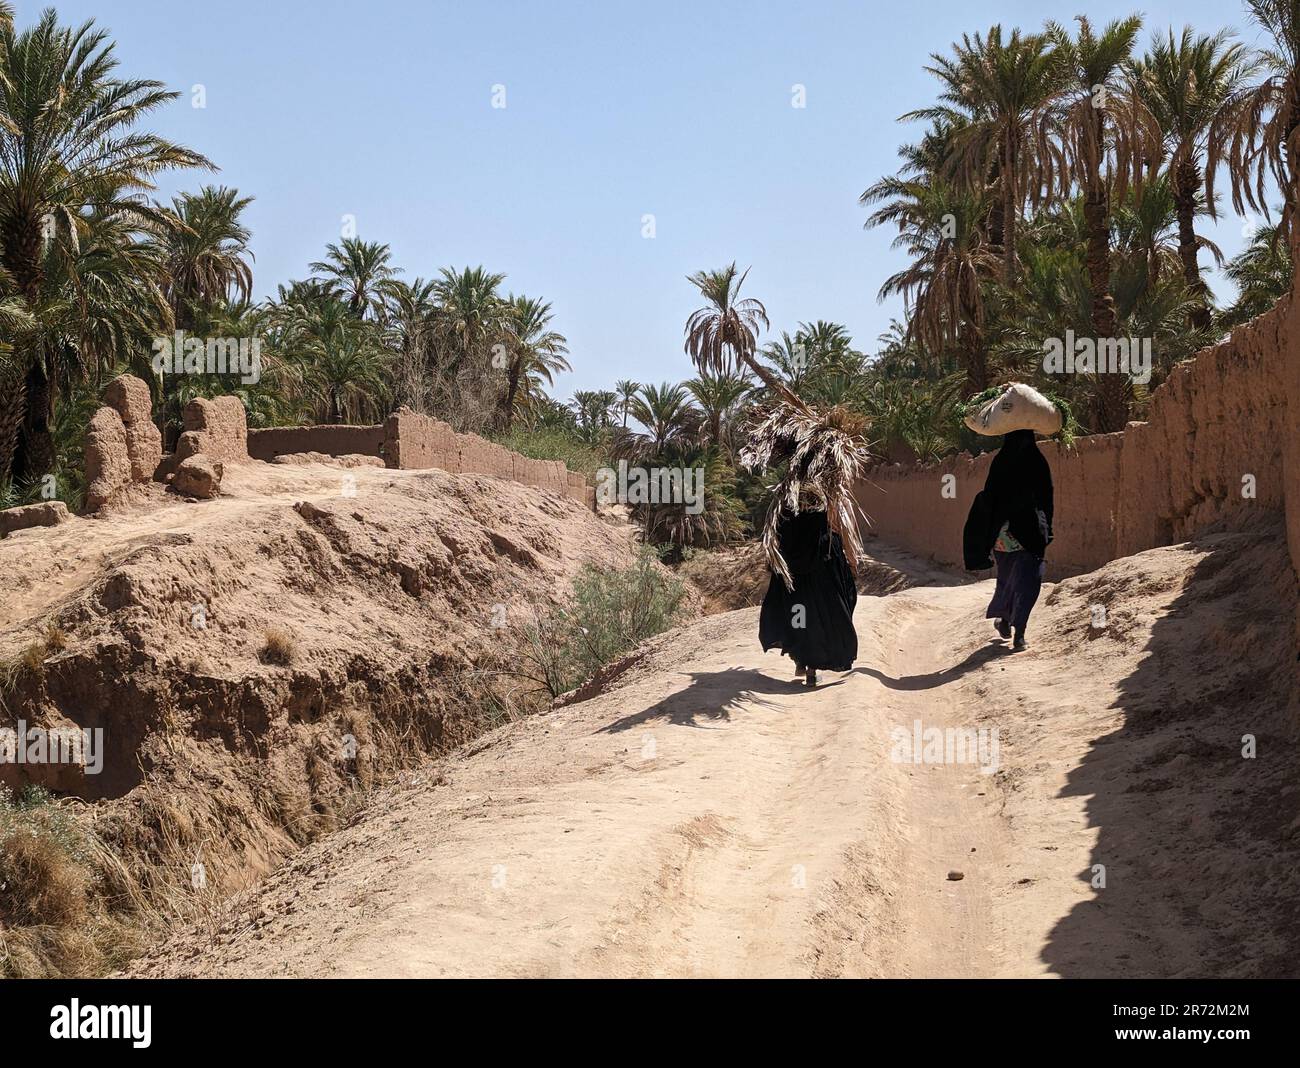 Un randonneur dans un paysage agricole pittoresque dans la belle vallée de Draa, palmeraies entourant le chemin de randonnée, Maroc Banque D'Images